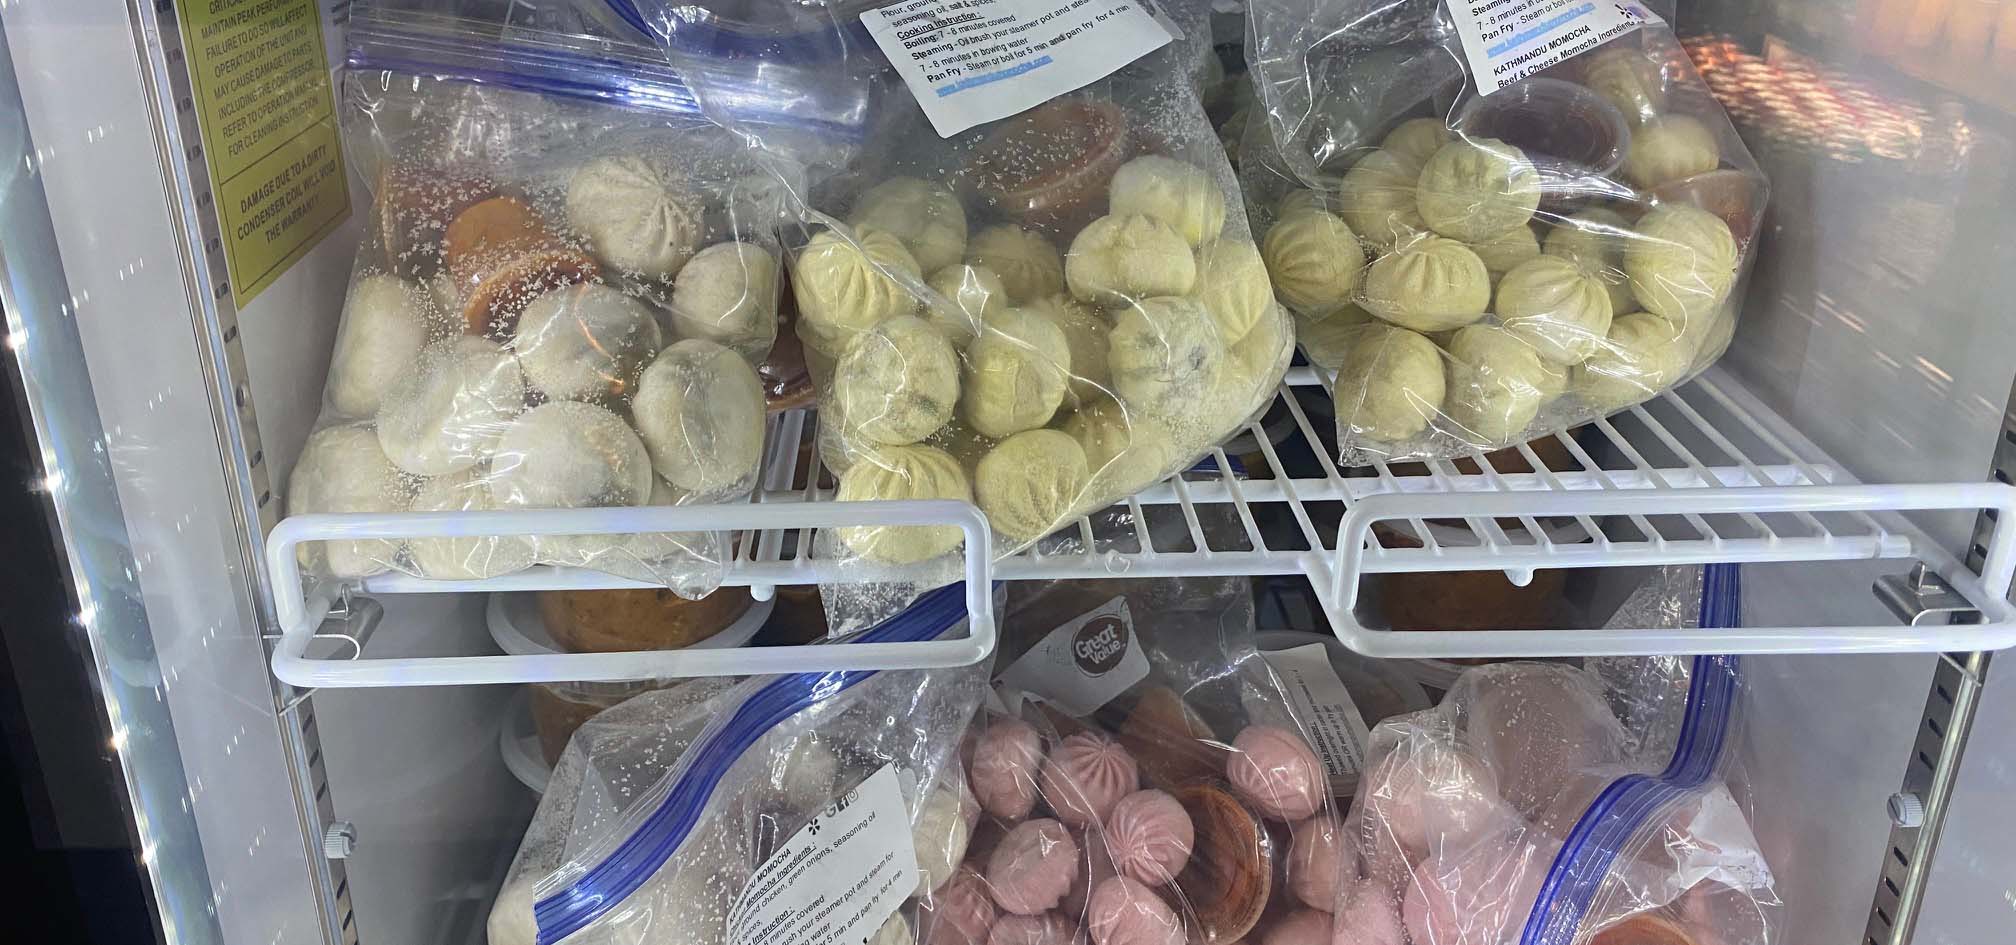 Freezer full of frozen Nepalese dumpling varieties.